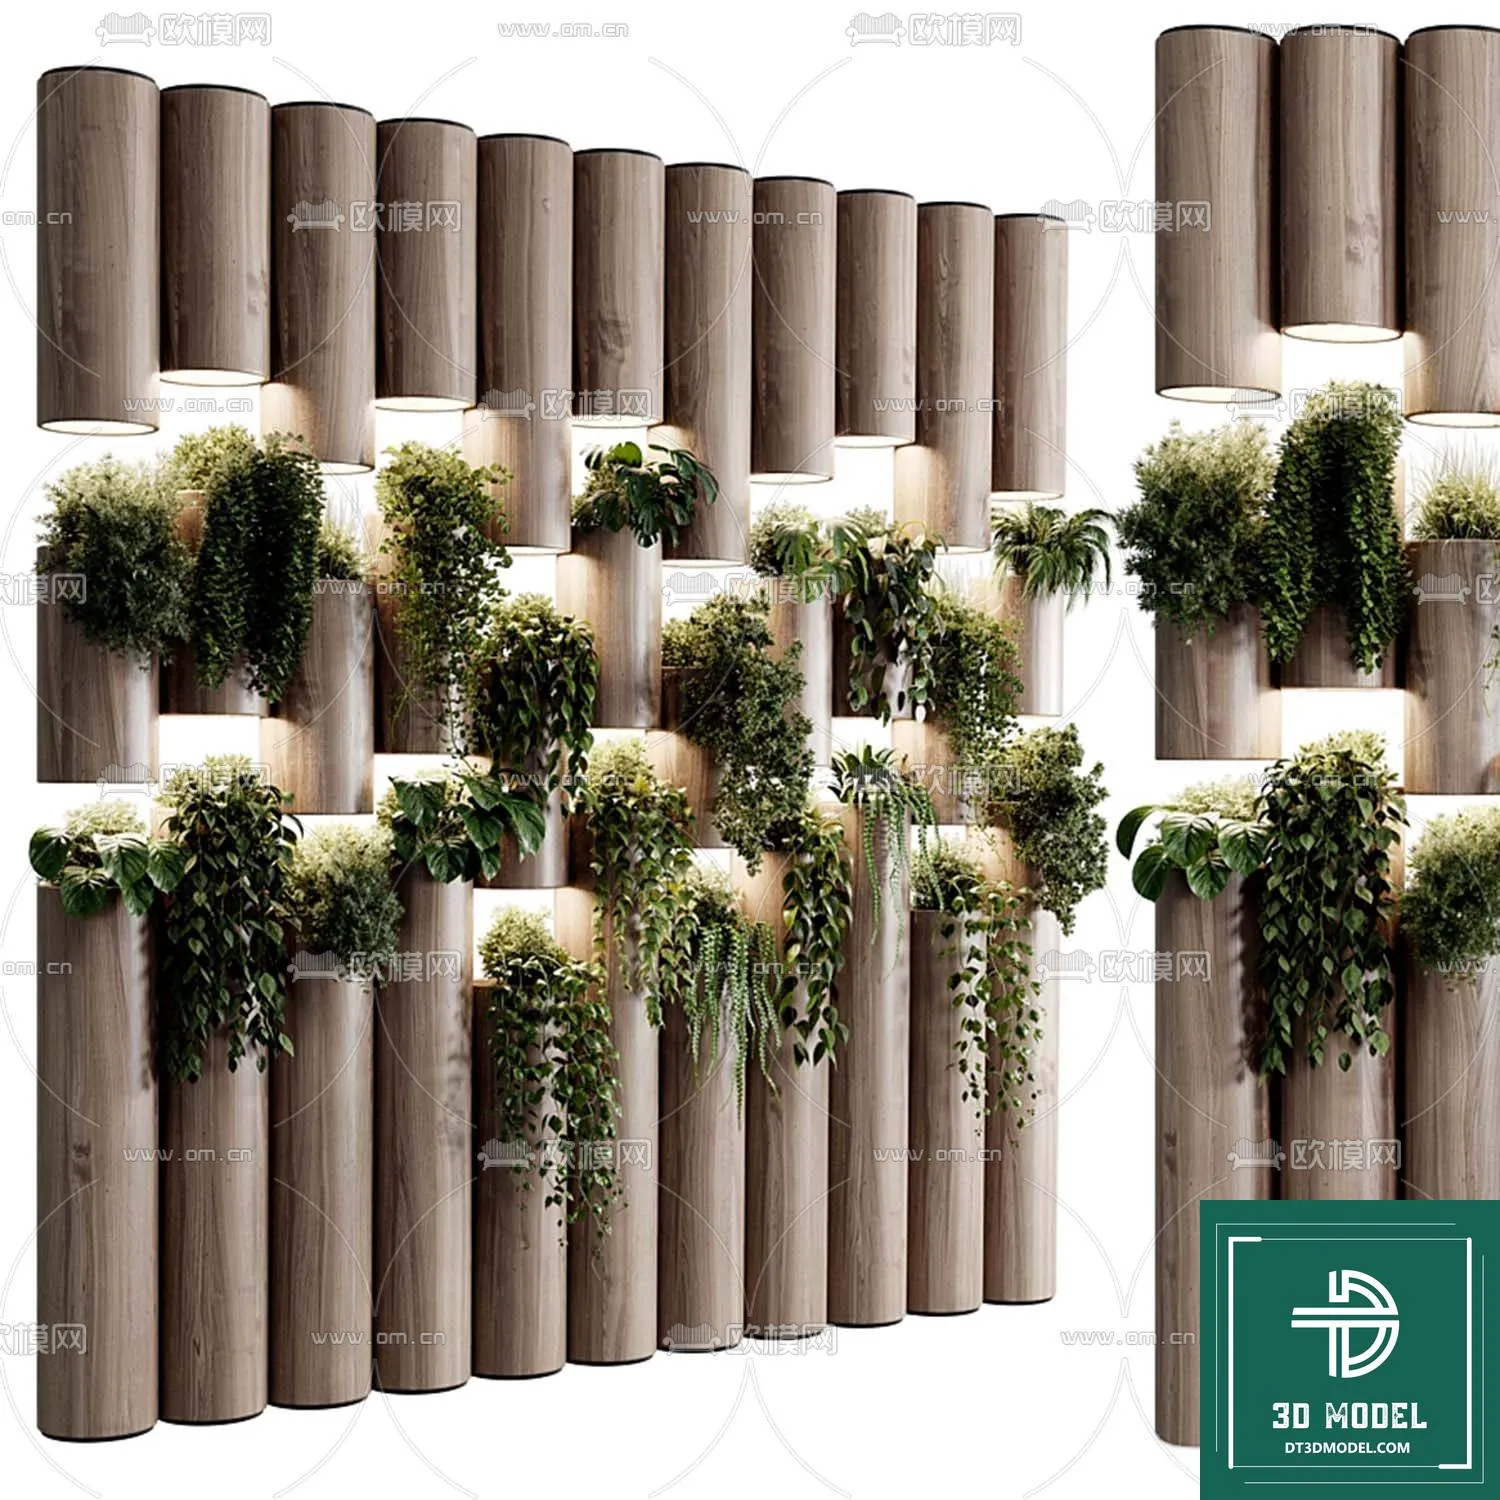 VERTICAL GARDEN – FITOWALL PLANT 3D MODEL – 153